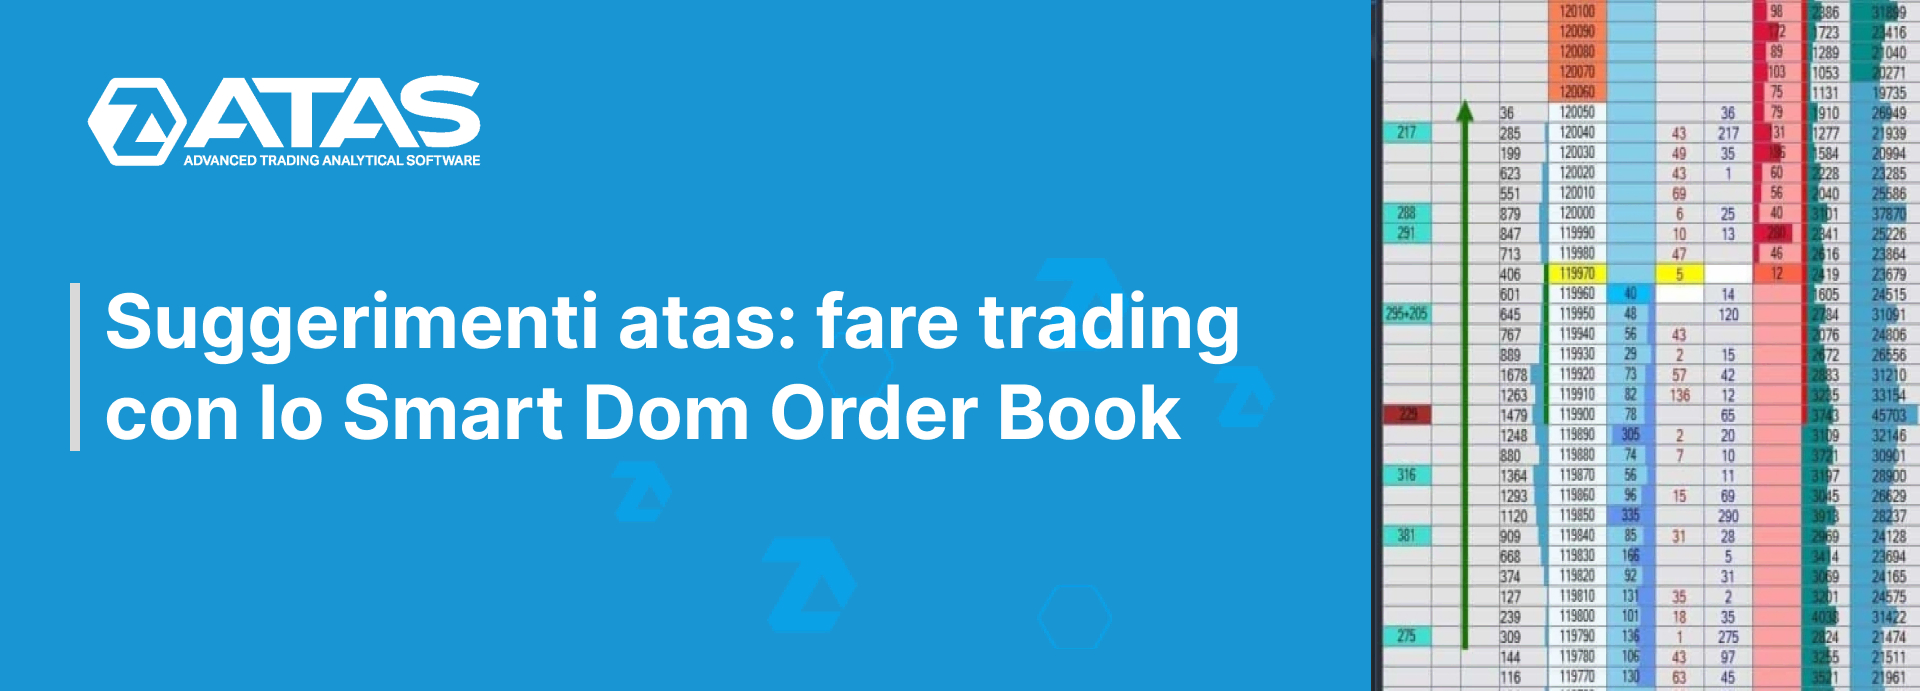 Suggerimenti atas: fare trading con lo smart dom order book